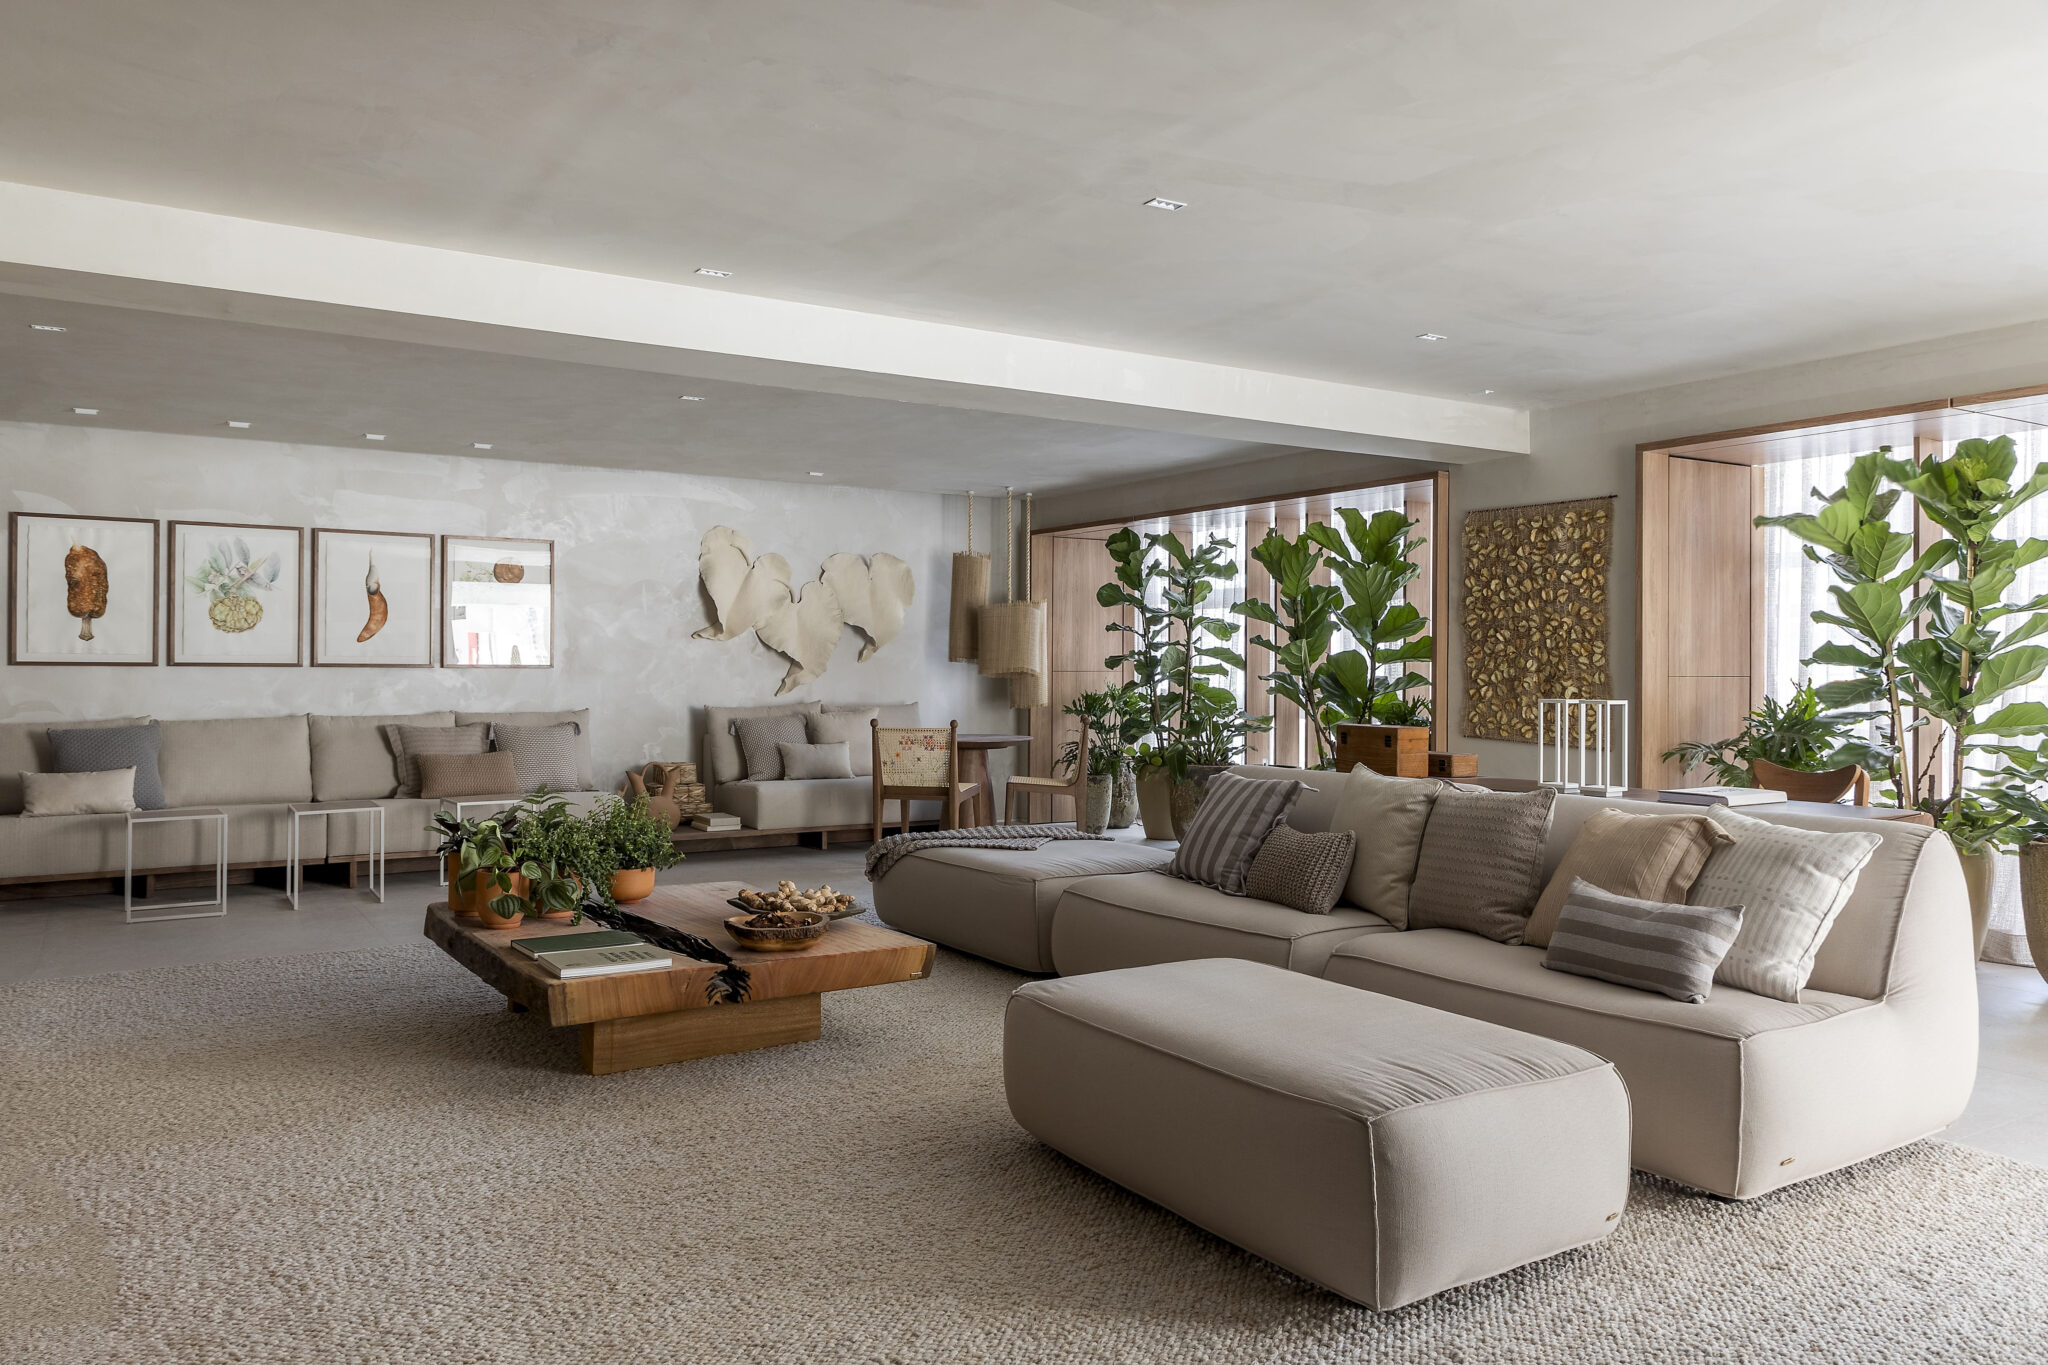 Casa: boas escolhas no décor dos ambientes contribuem com a saúde mental (sala de estar, foto: Revista Design.com)